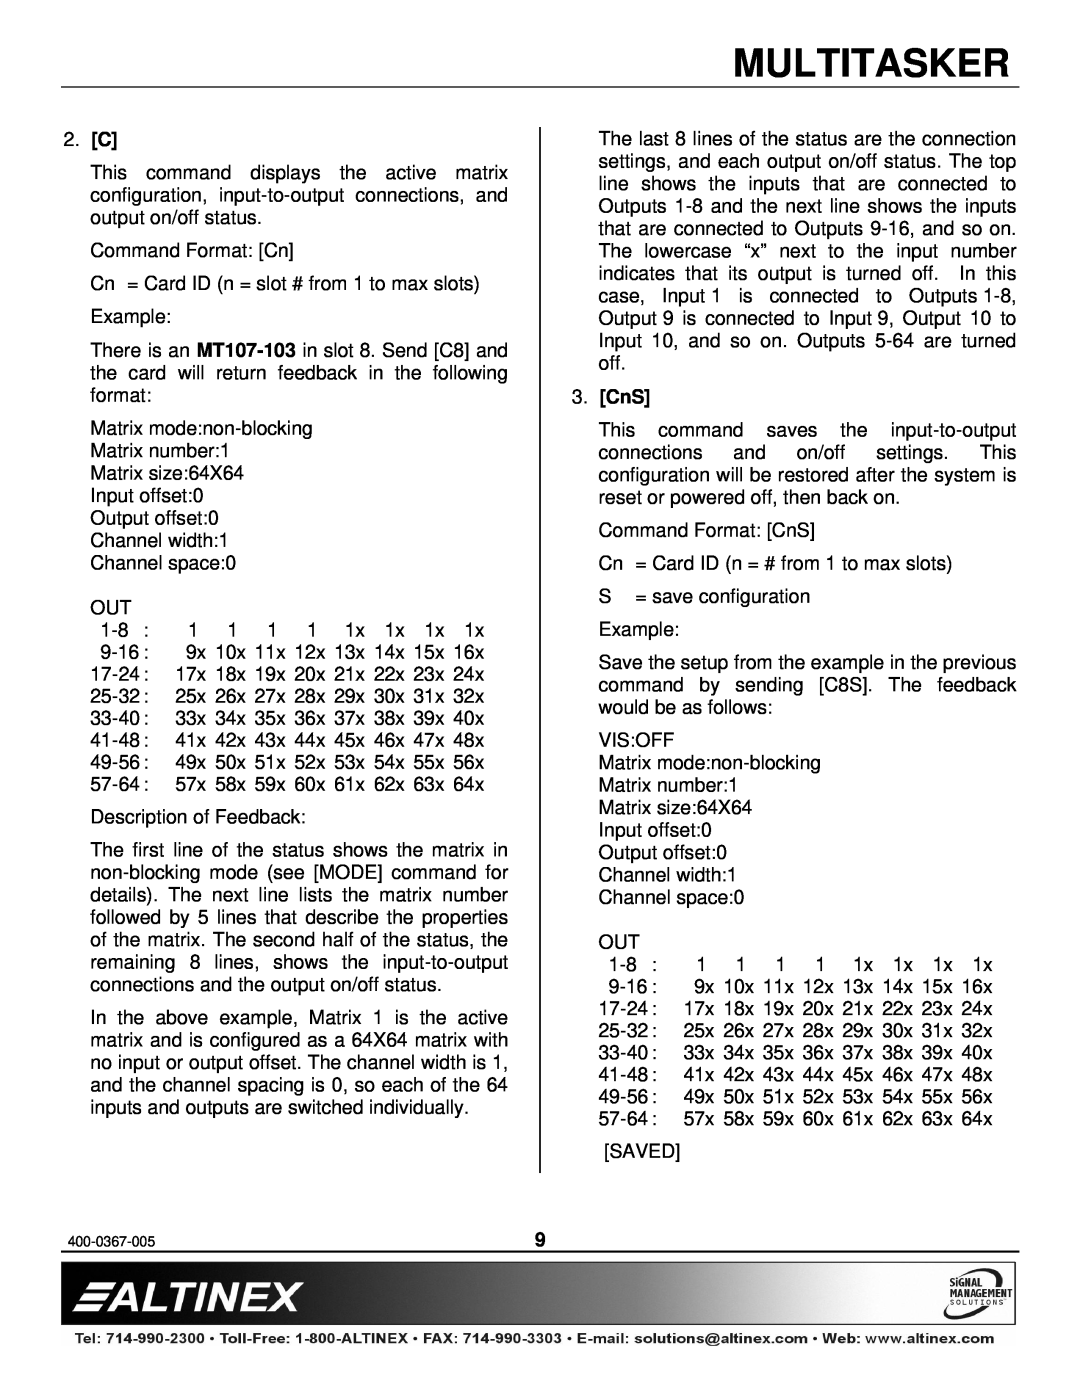 Altinex MT107-103 manual 2. C, CnS, Multitasker 